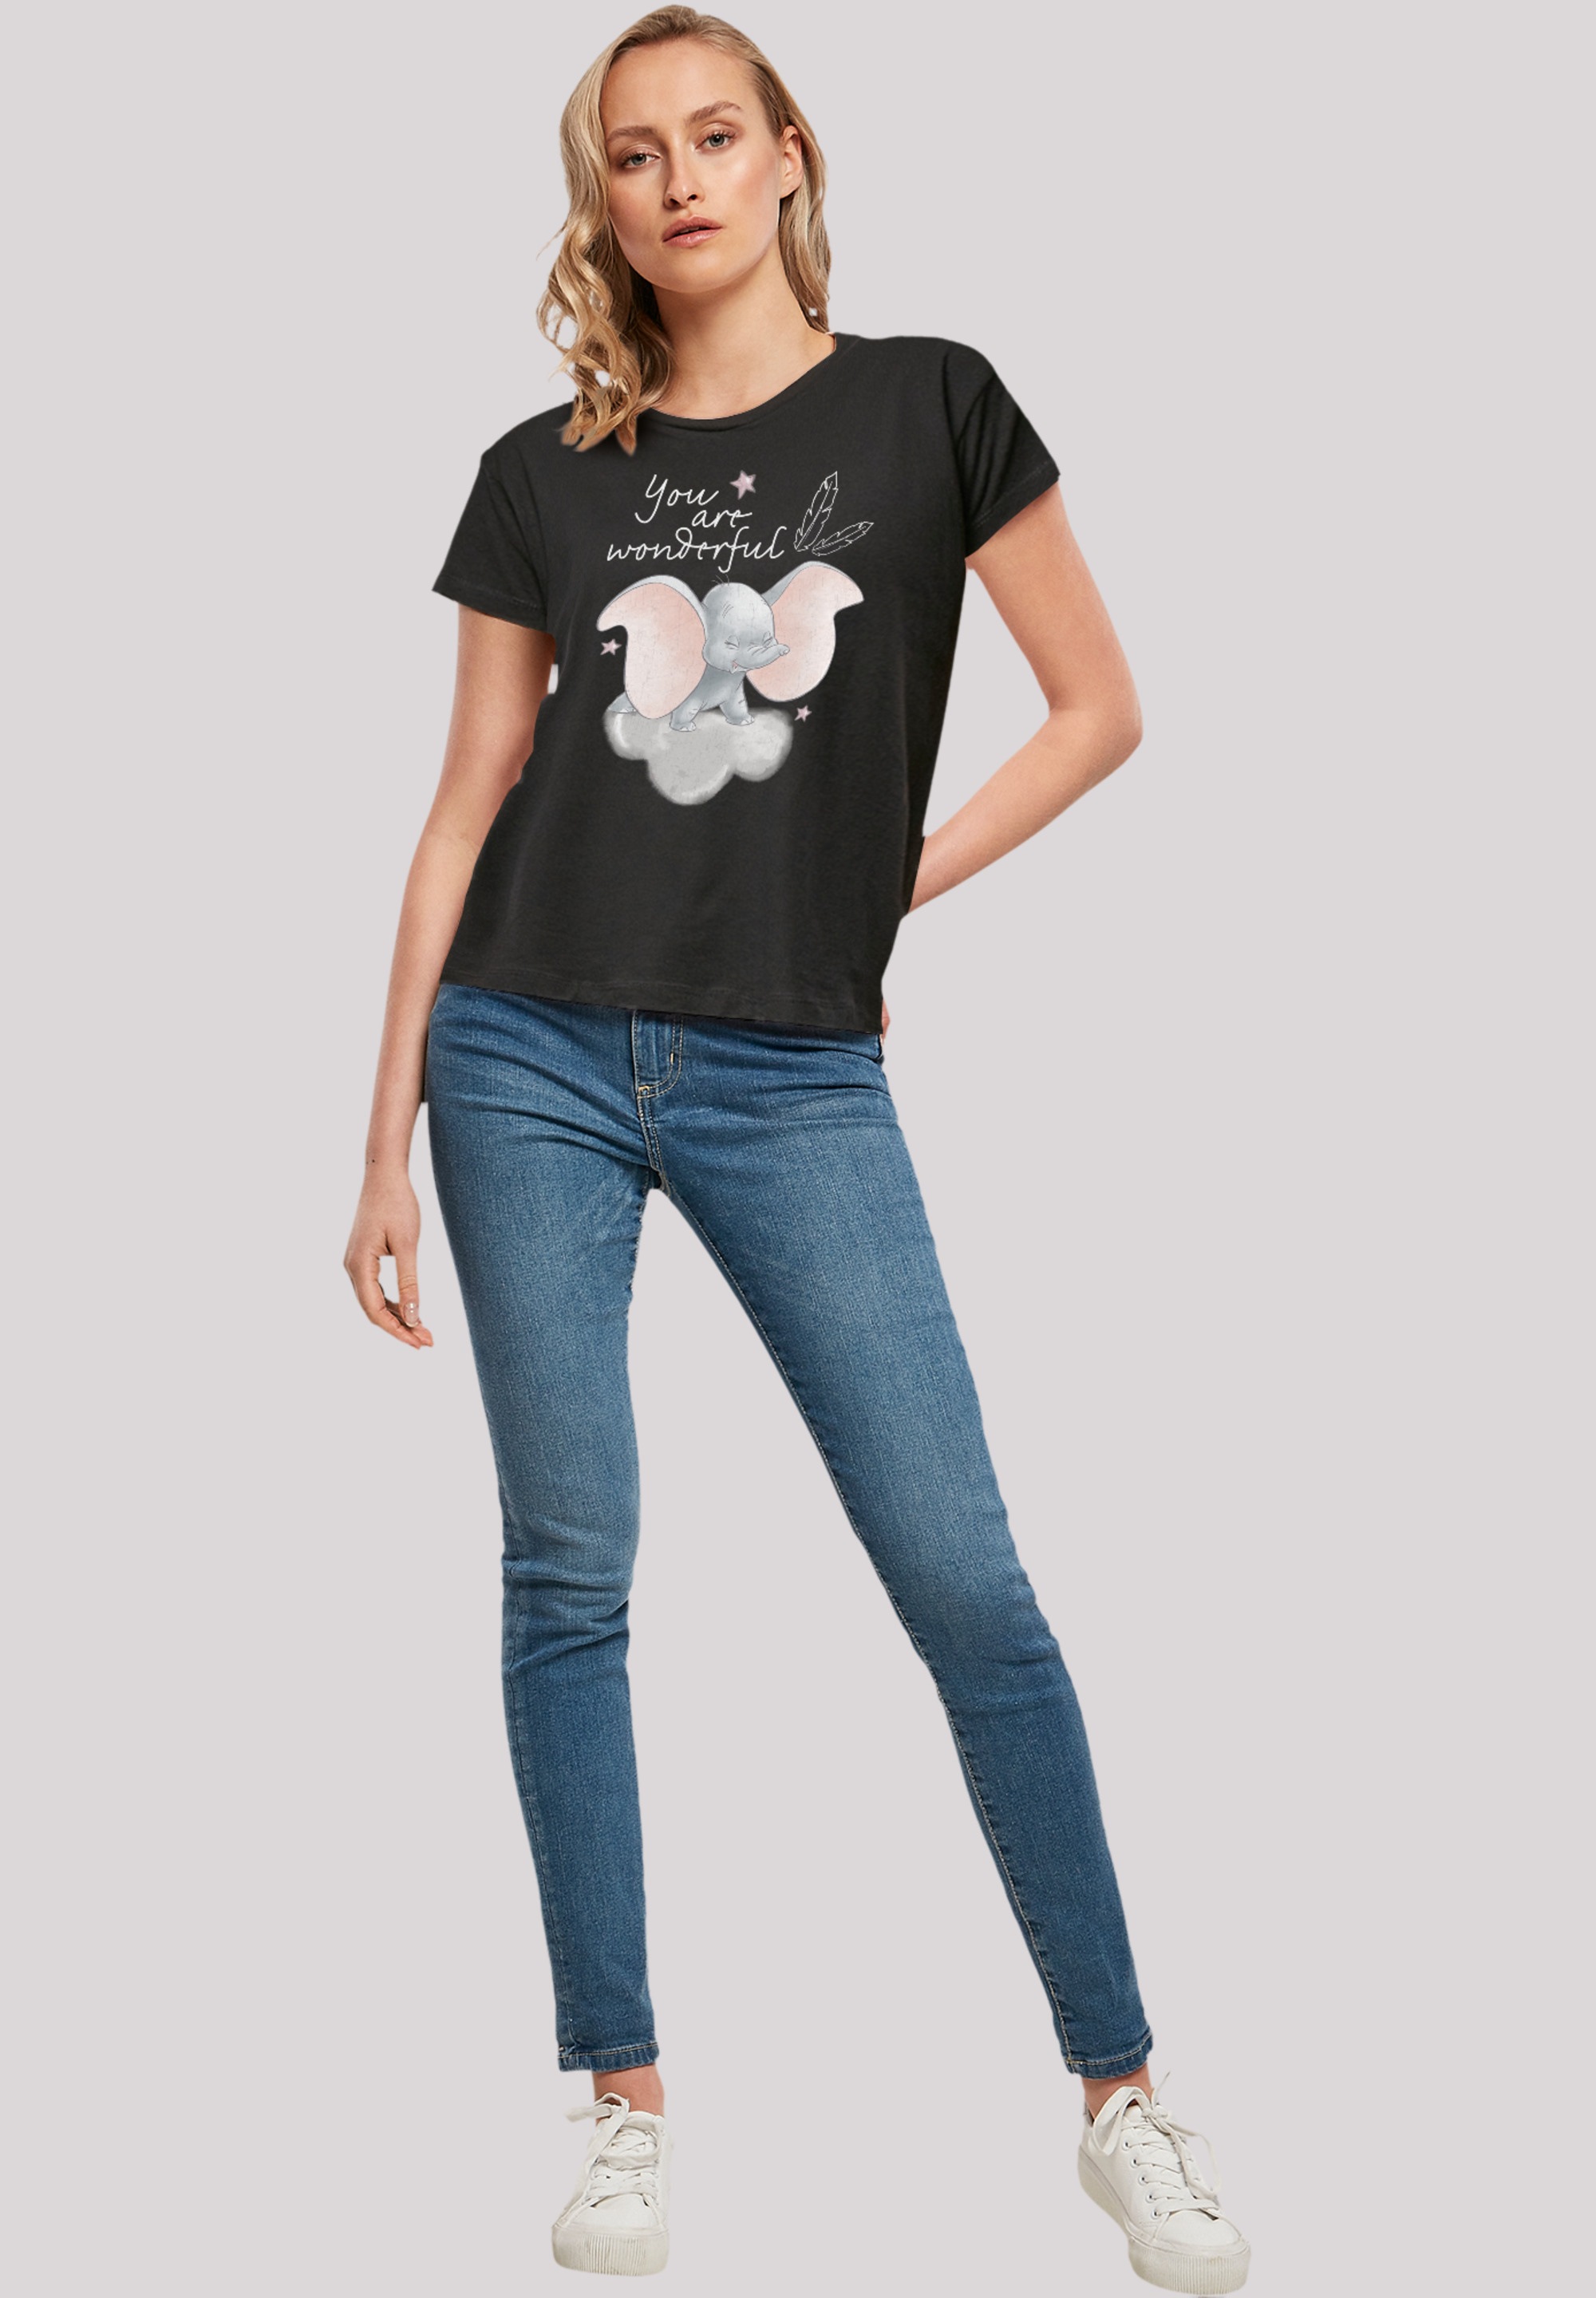 F4NT4STIC T-Shirt »Disney Dumbo You Are Wonderful«, Premium Qualität für  bestellen | BAUR